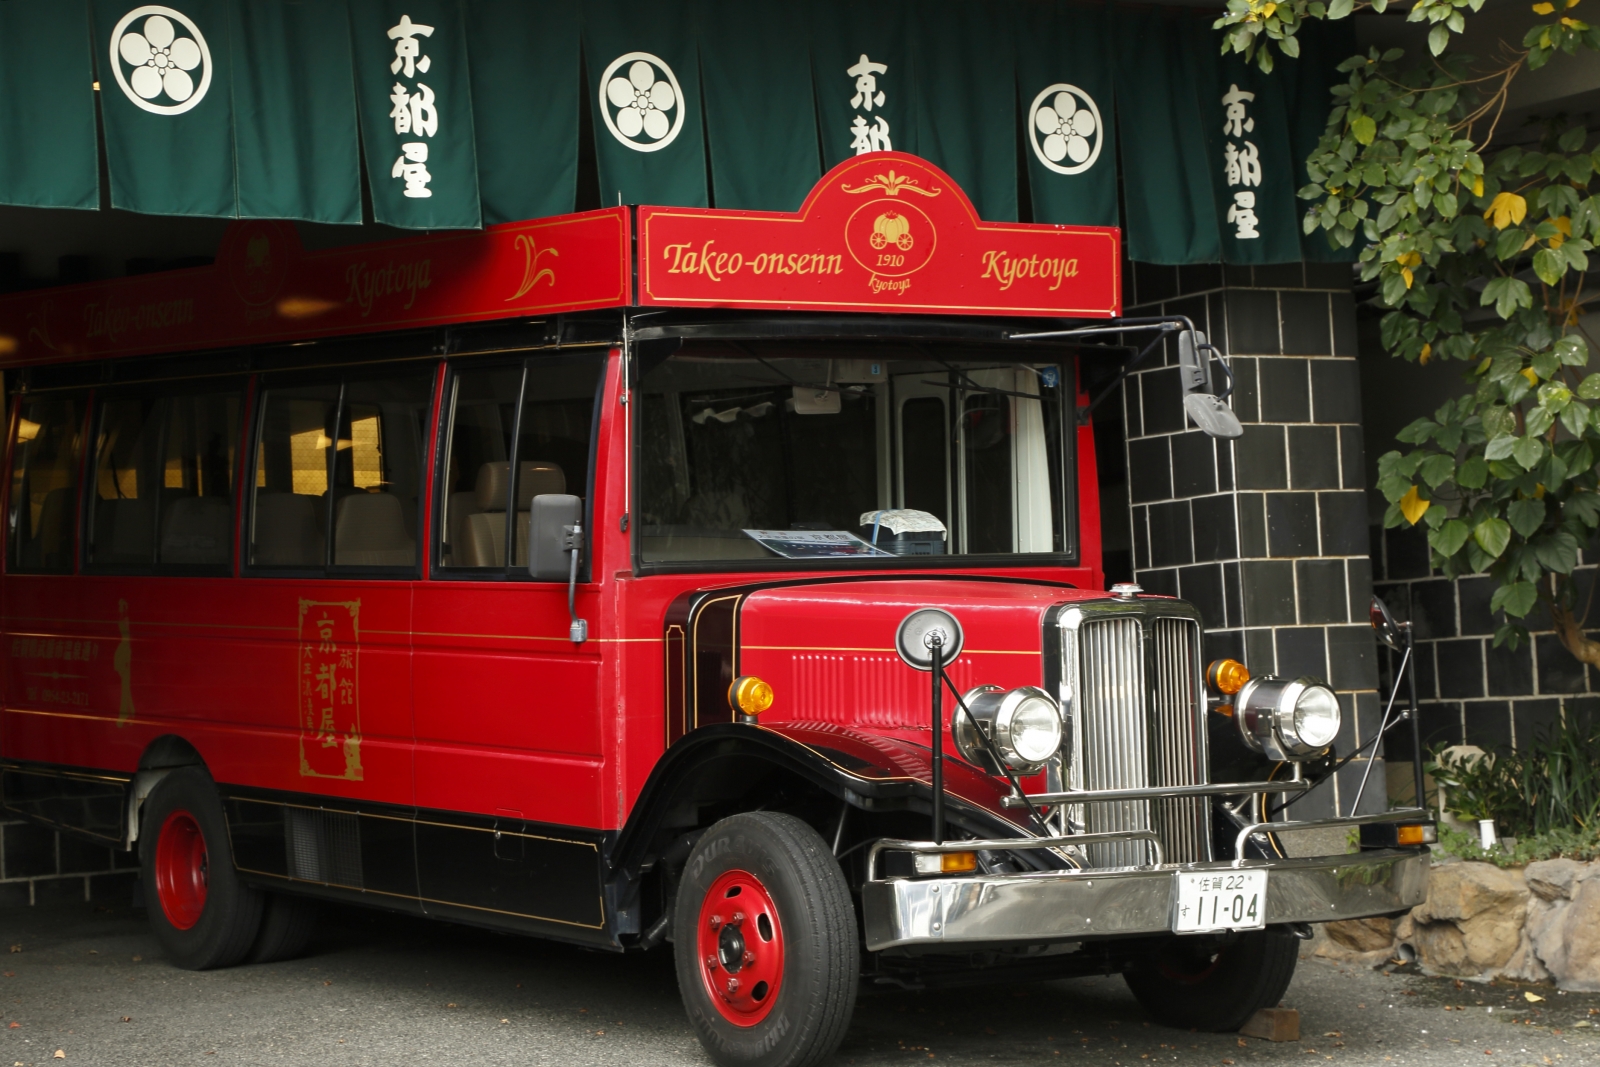 武雄溫泉的旅館京都屋富於大正浪漫時期的懷舊之美。